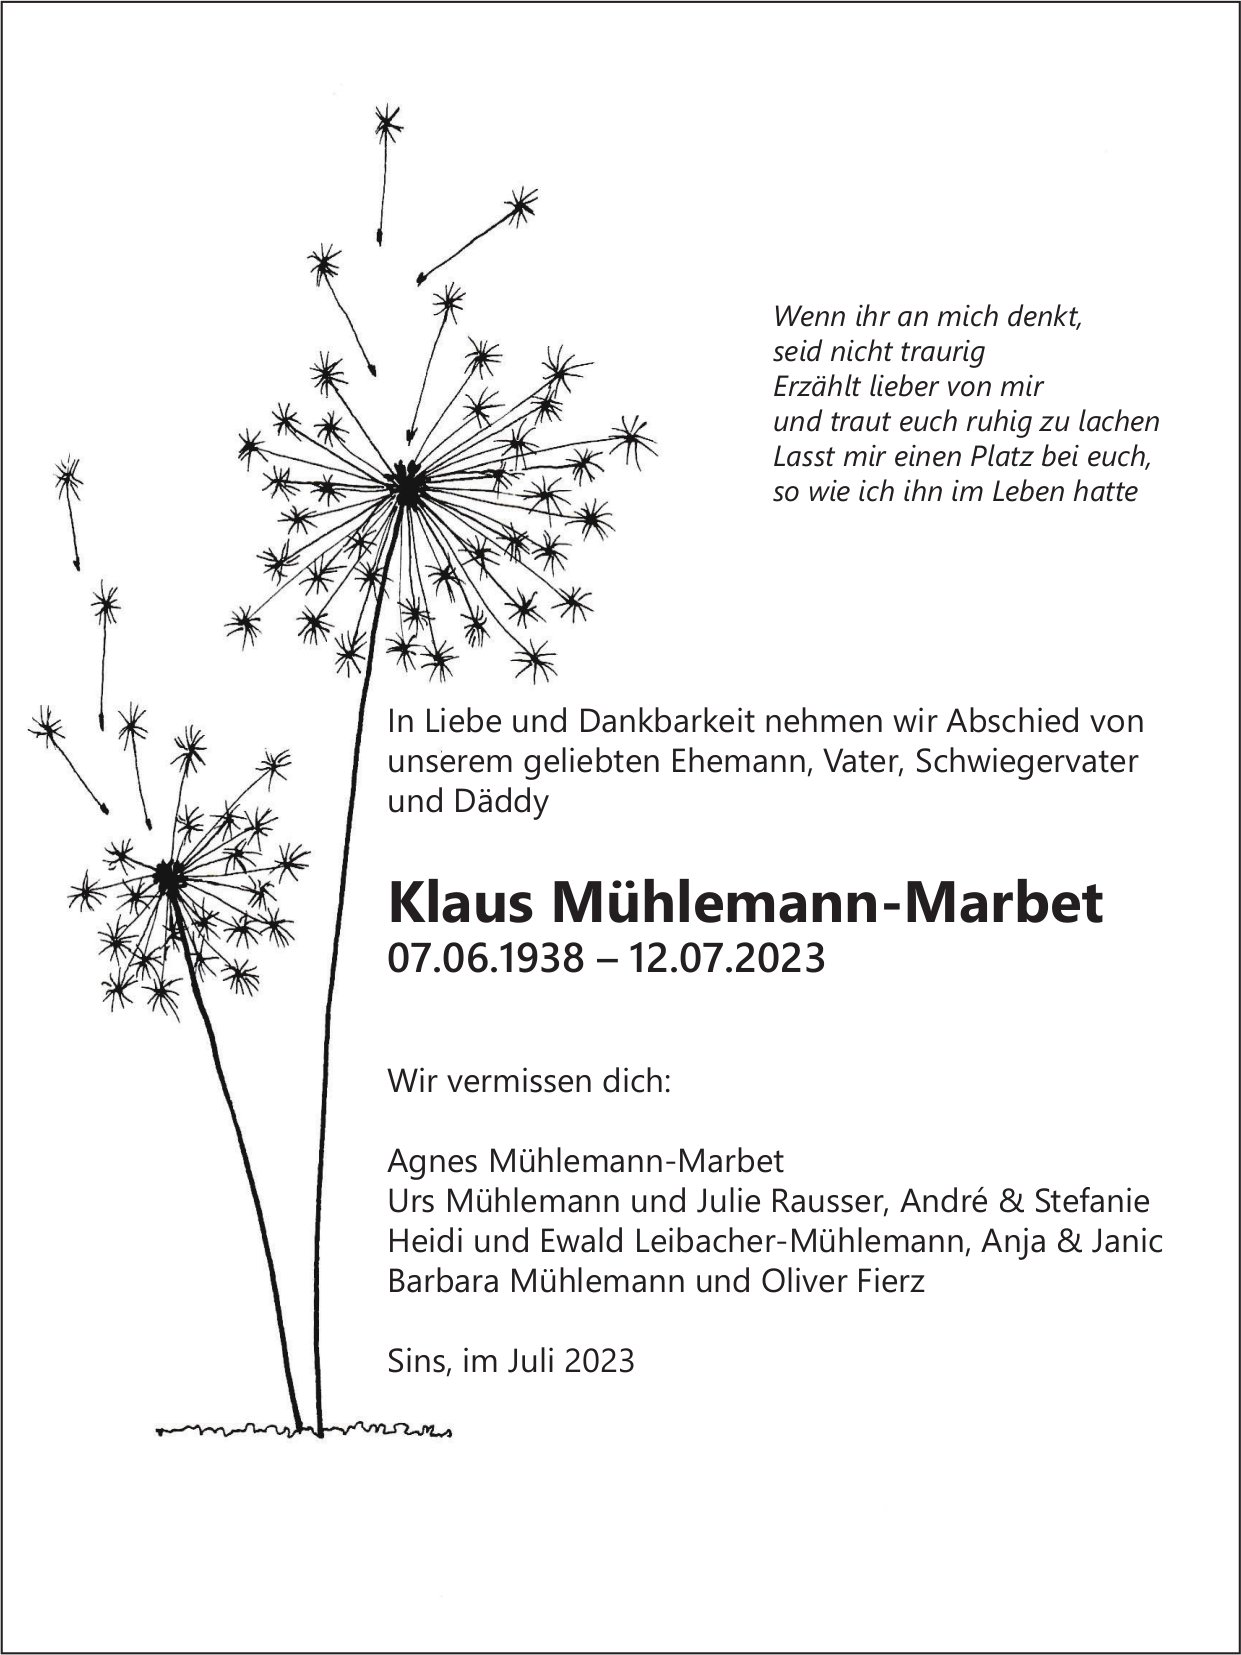 Mühlemann-Marbet Klaus, Juli 2023 / TA